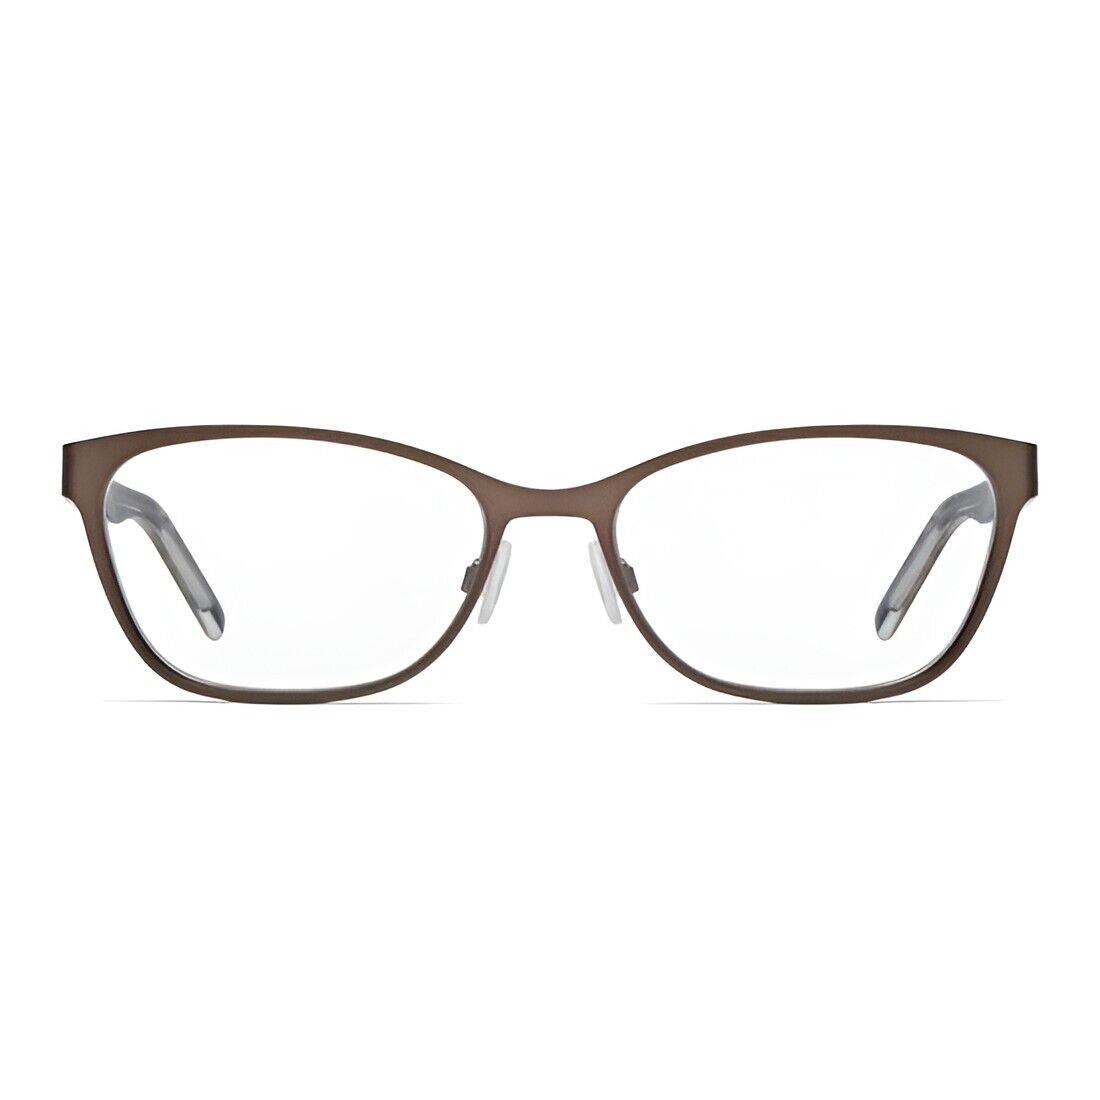 Hugo Boss Eyeglasses - HG 1008 Hgc - Metal Brown/havana 54-17-145 - Frame: Brown